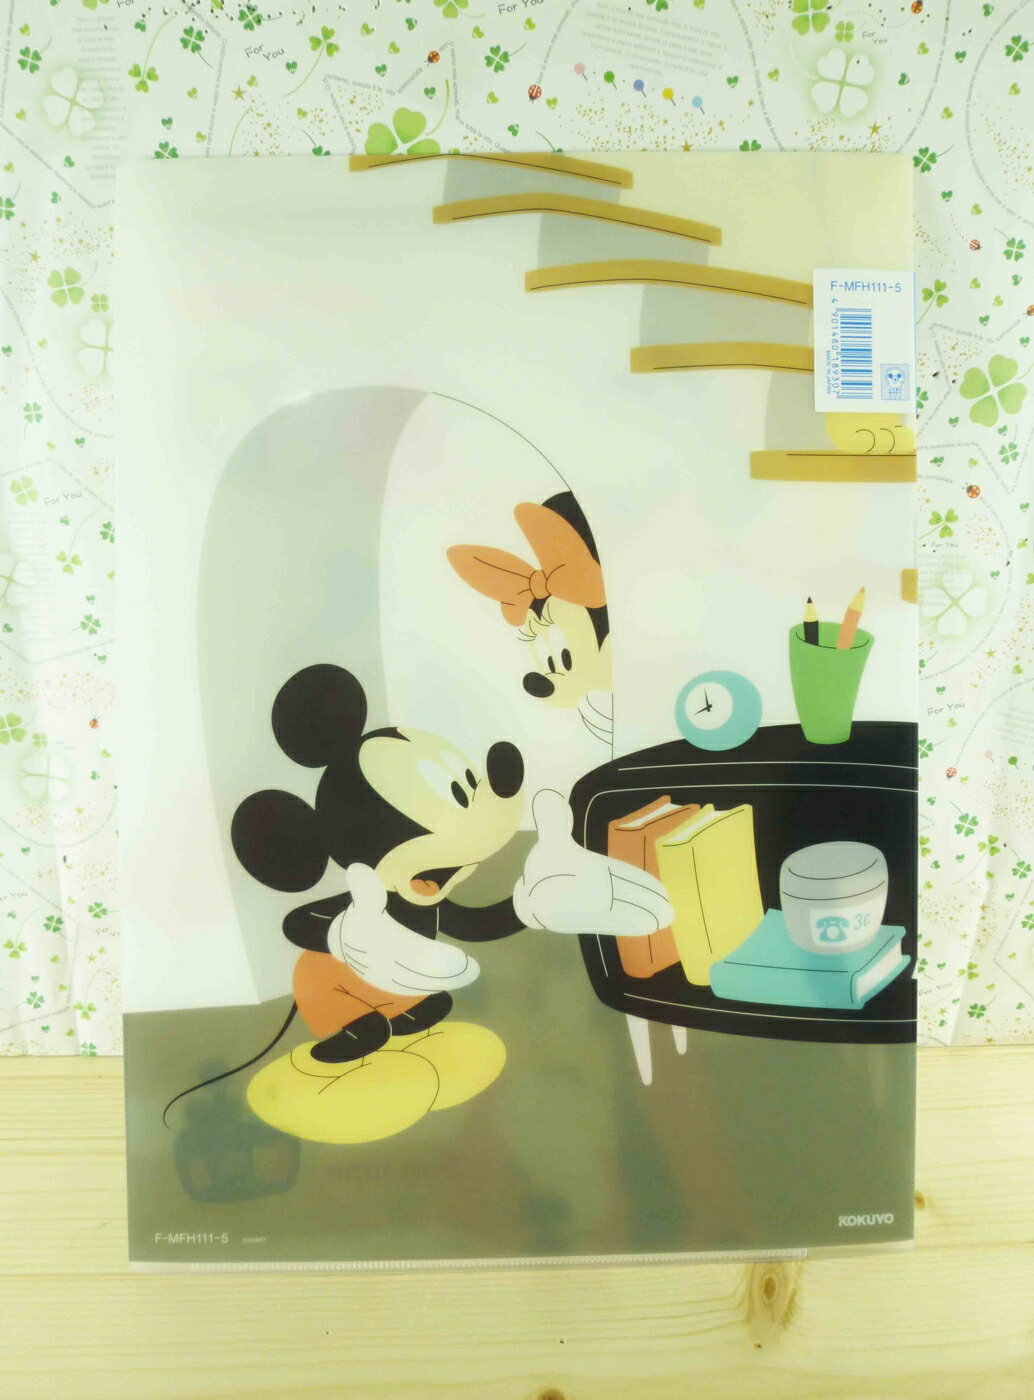 【震撼精品百貨】Micky Mouse 米奇/米妮 分類掀開夾-米奇與米妮樓梯下 震撼日式精品百貨